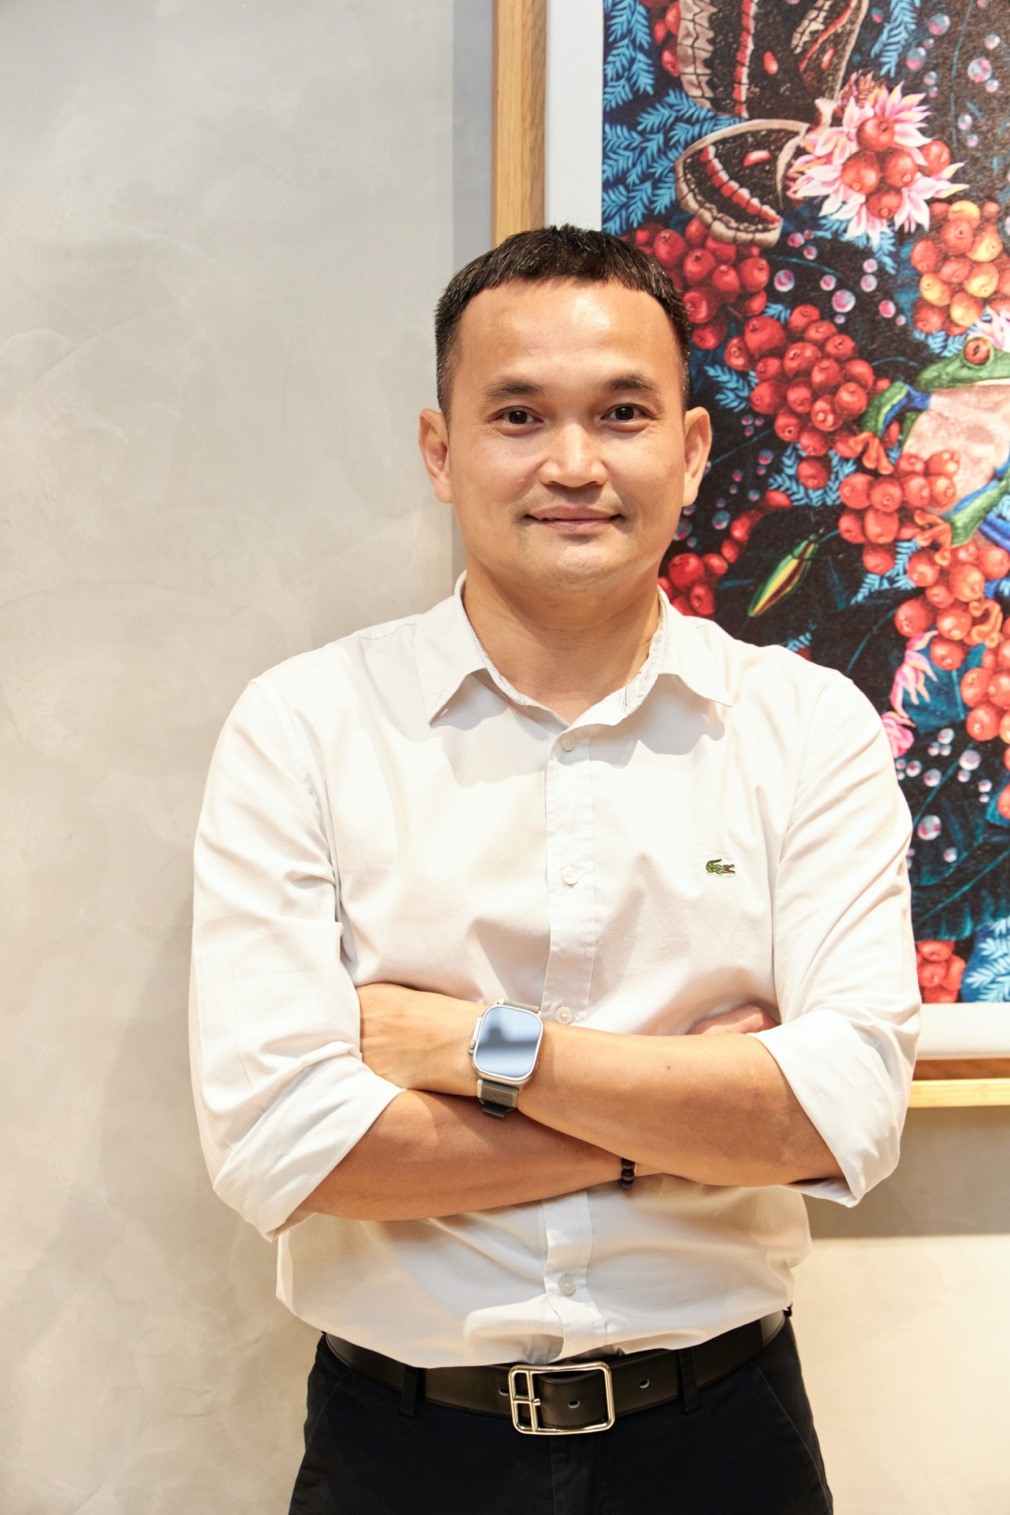 Kinh tế - Starbucks Vietnam công bố Tổng giám đốc mới là người Việt